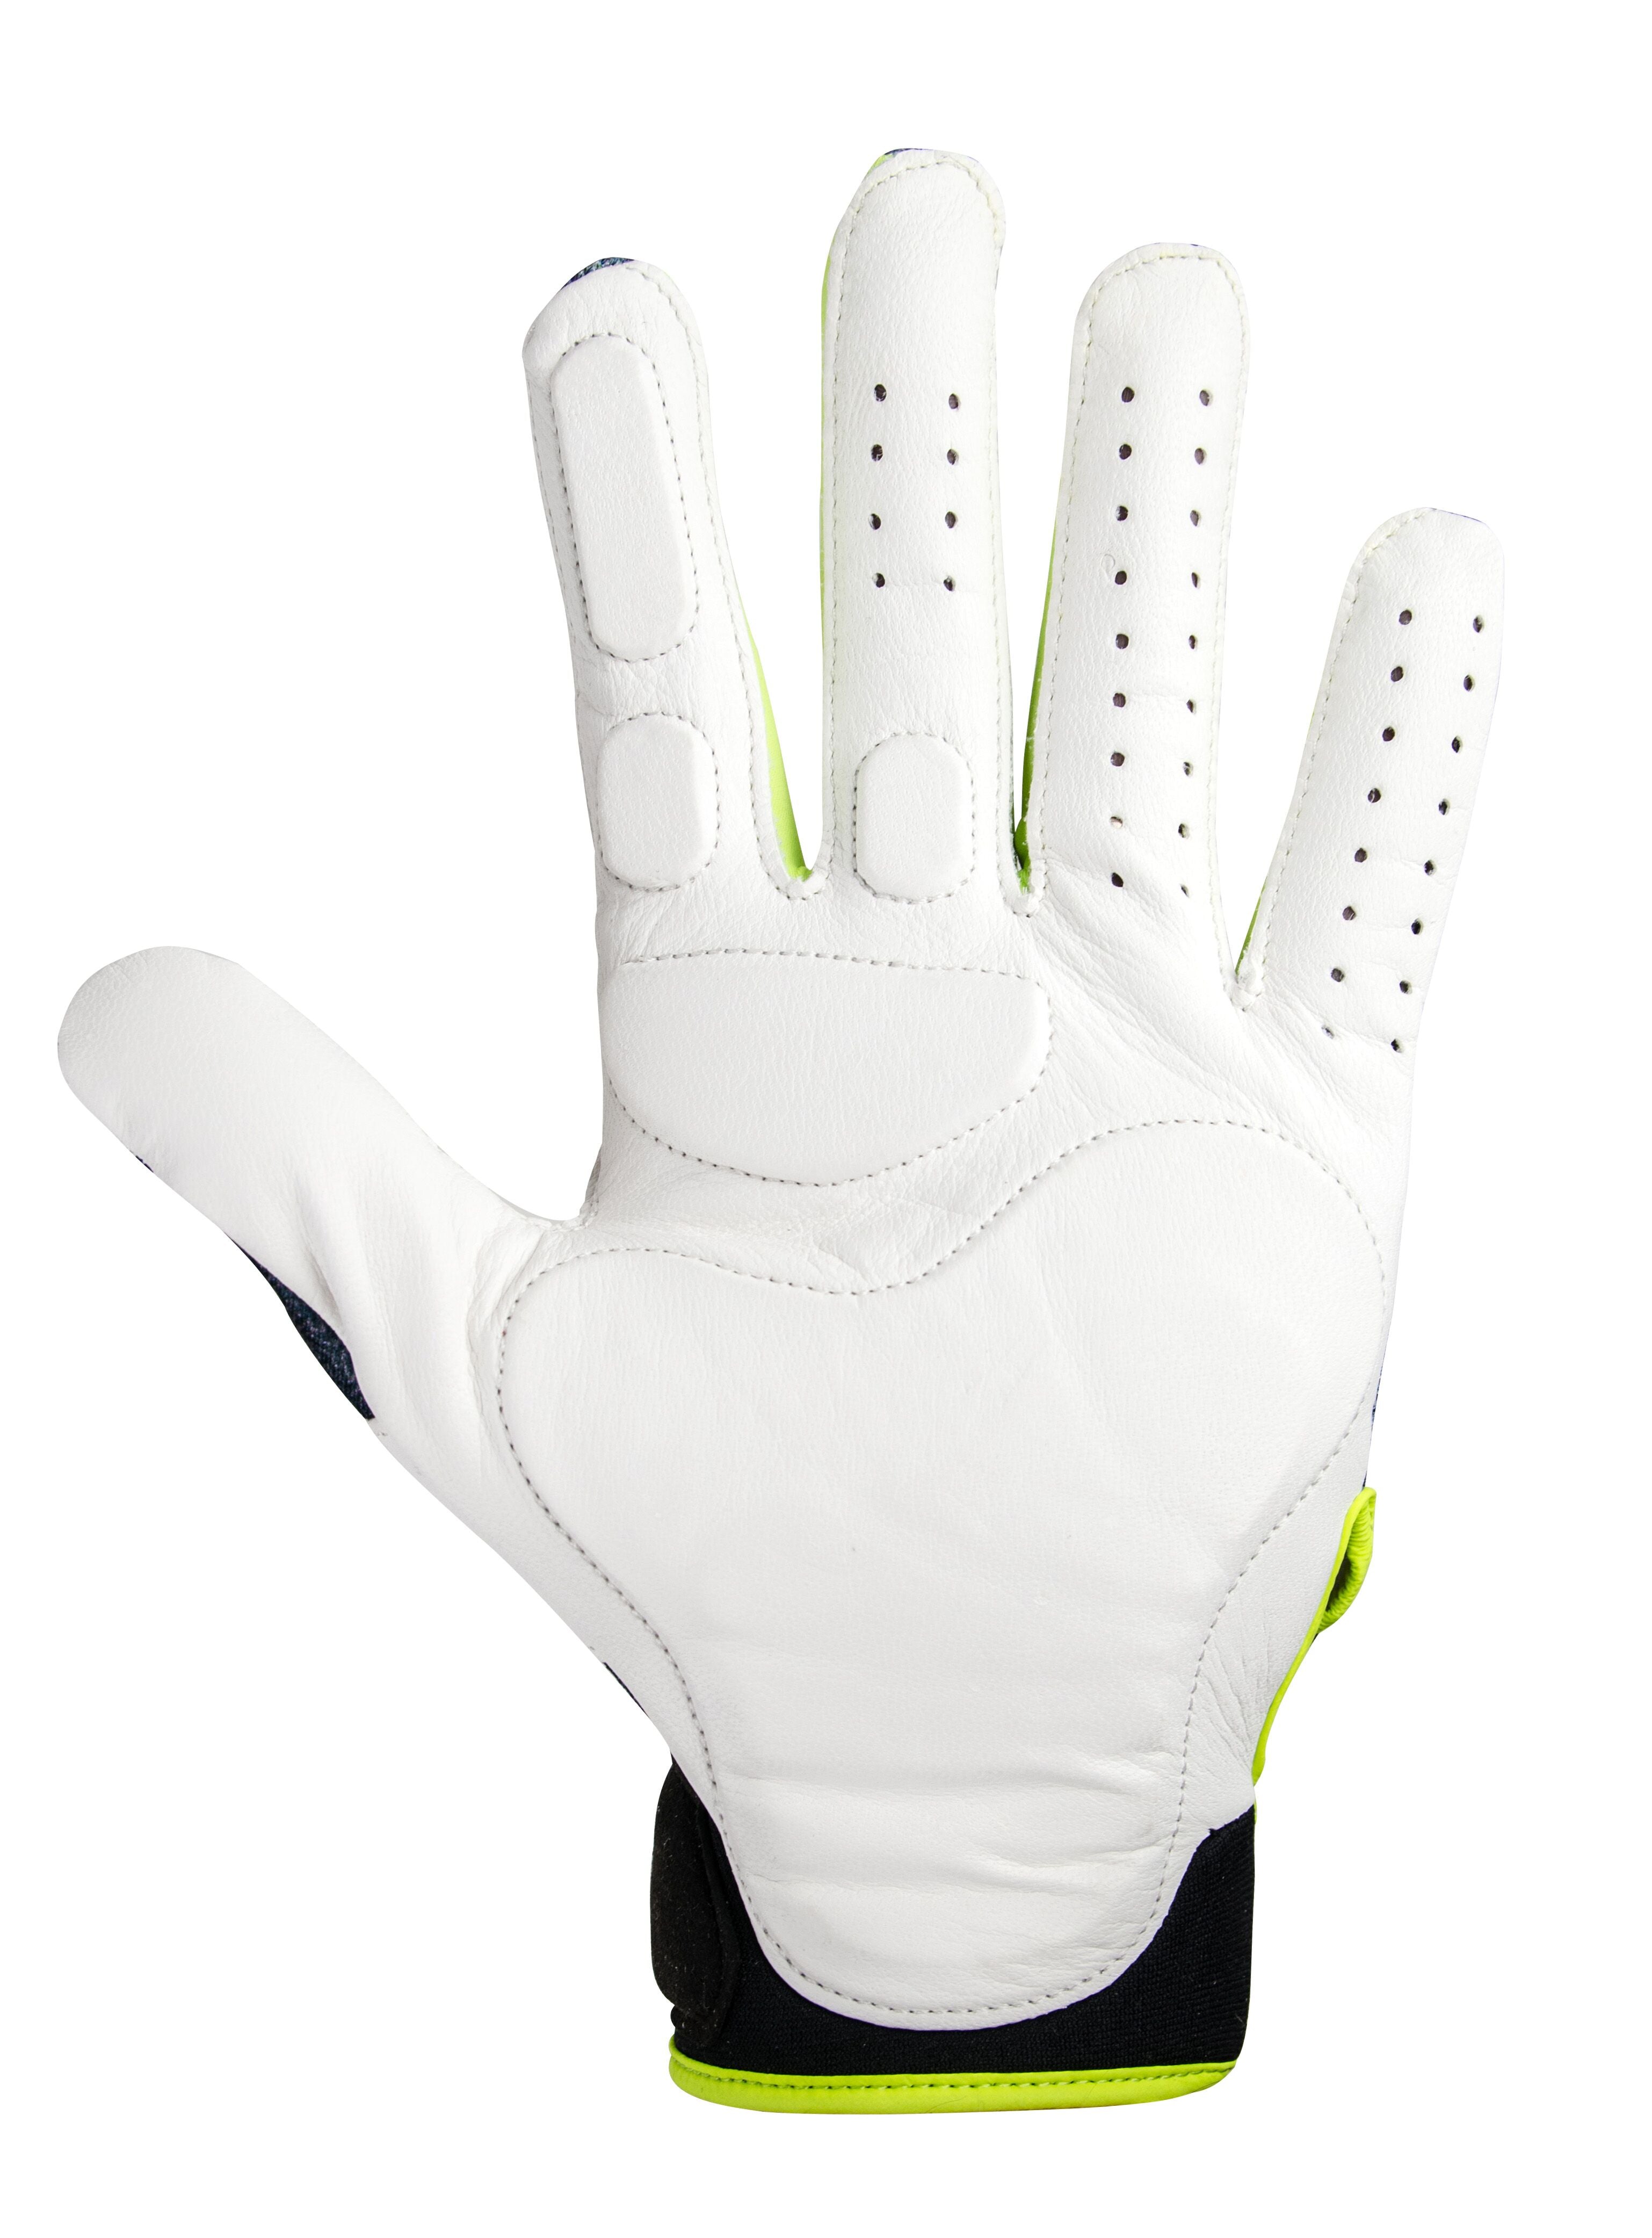 All-Star D30 Inner Glove Left Hand